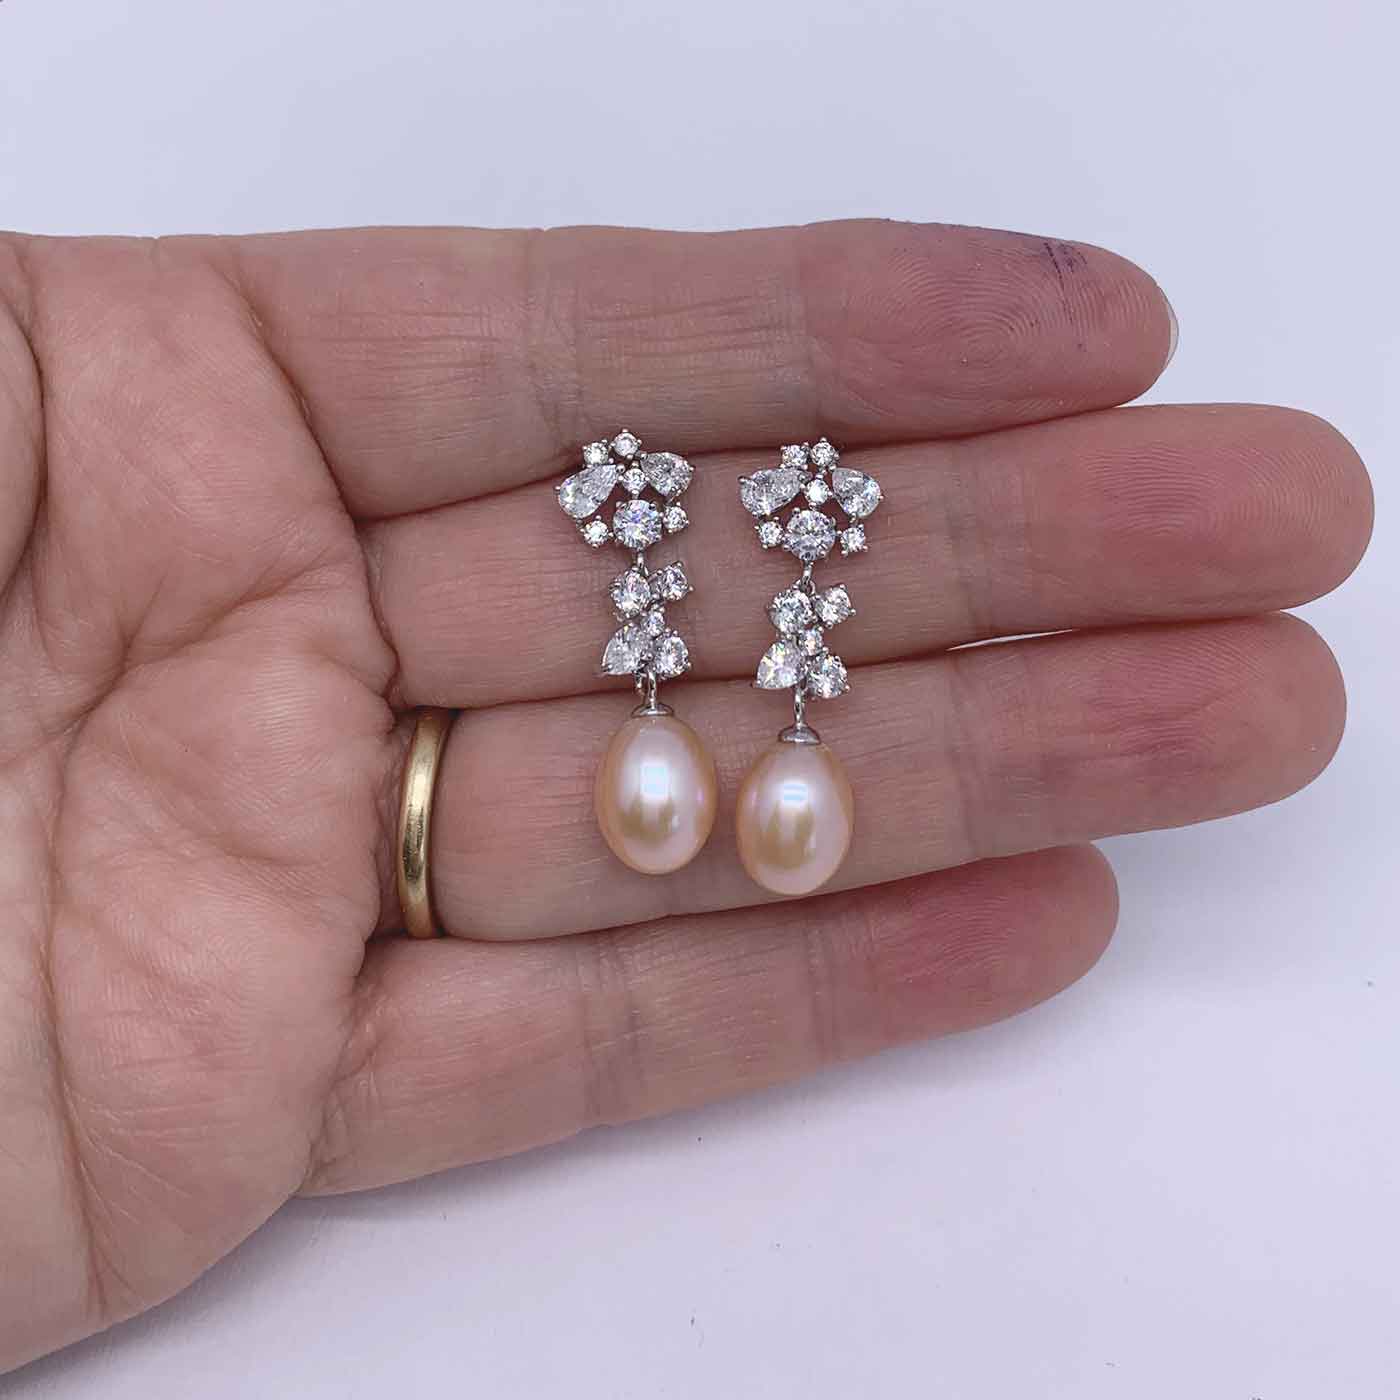 peach pearl silver drop earrings